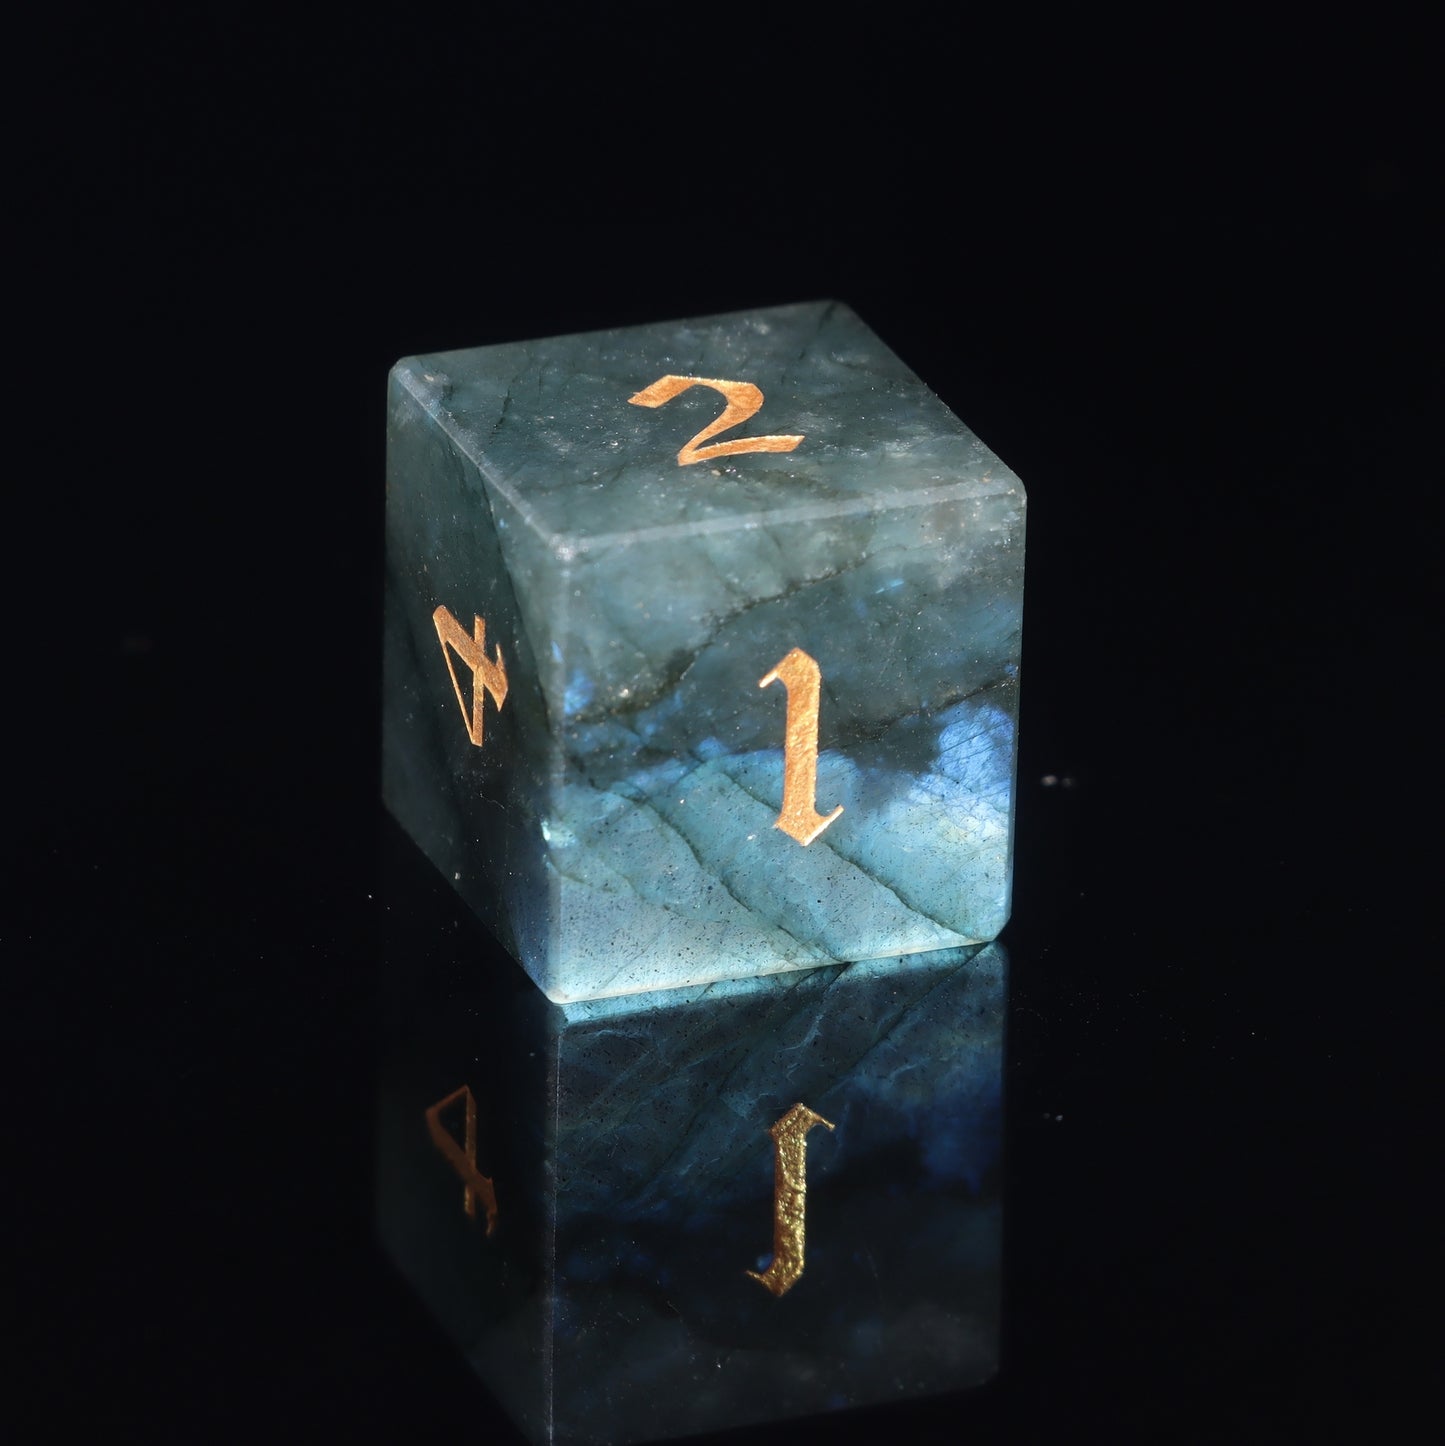 MAGISEVEN Labradorite Natural Gemstone 7 pieces D&D Dice SET